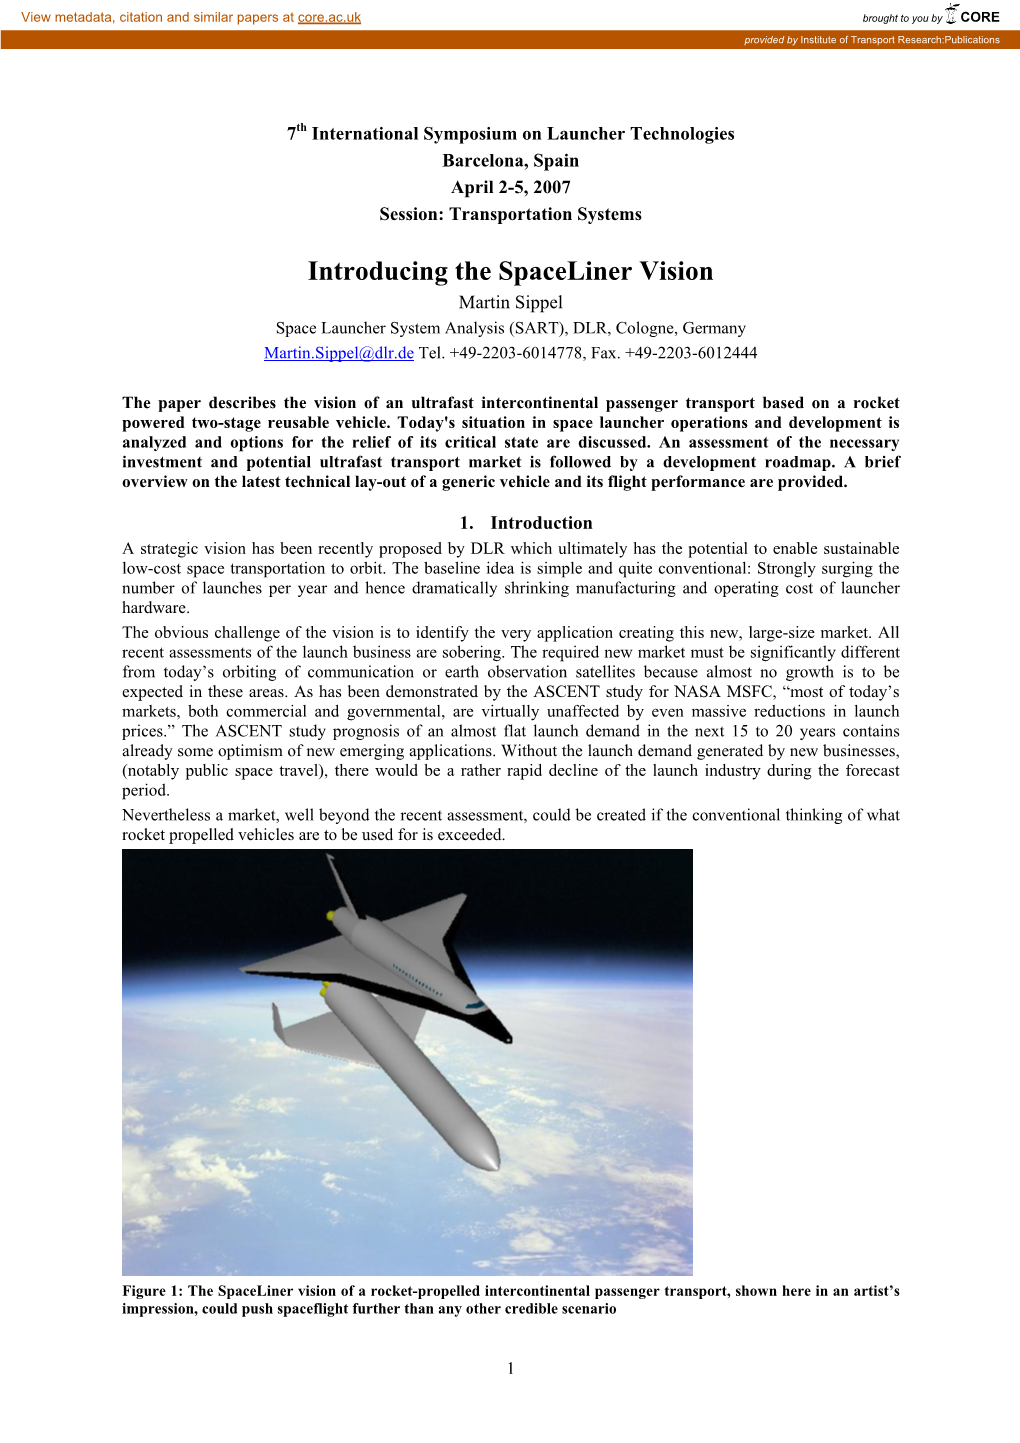 Spaceliner Vision CNES2007